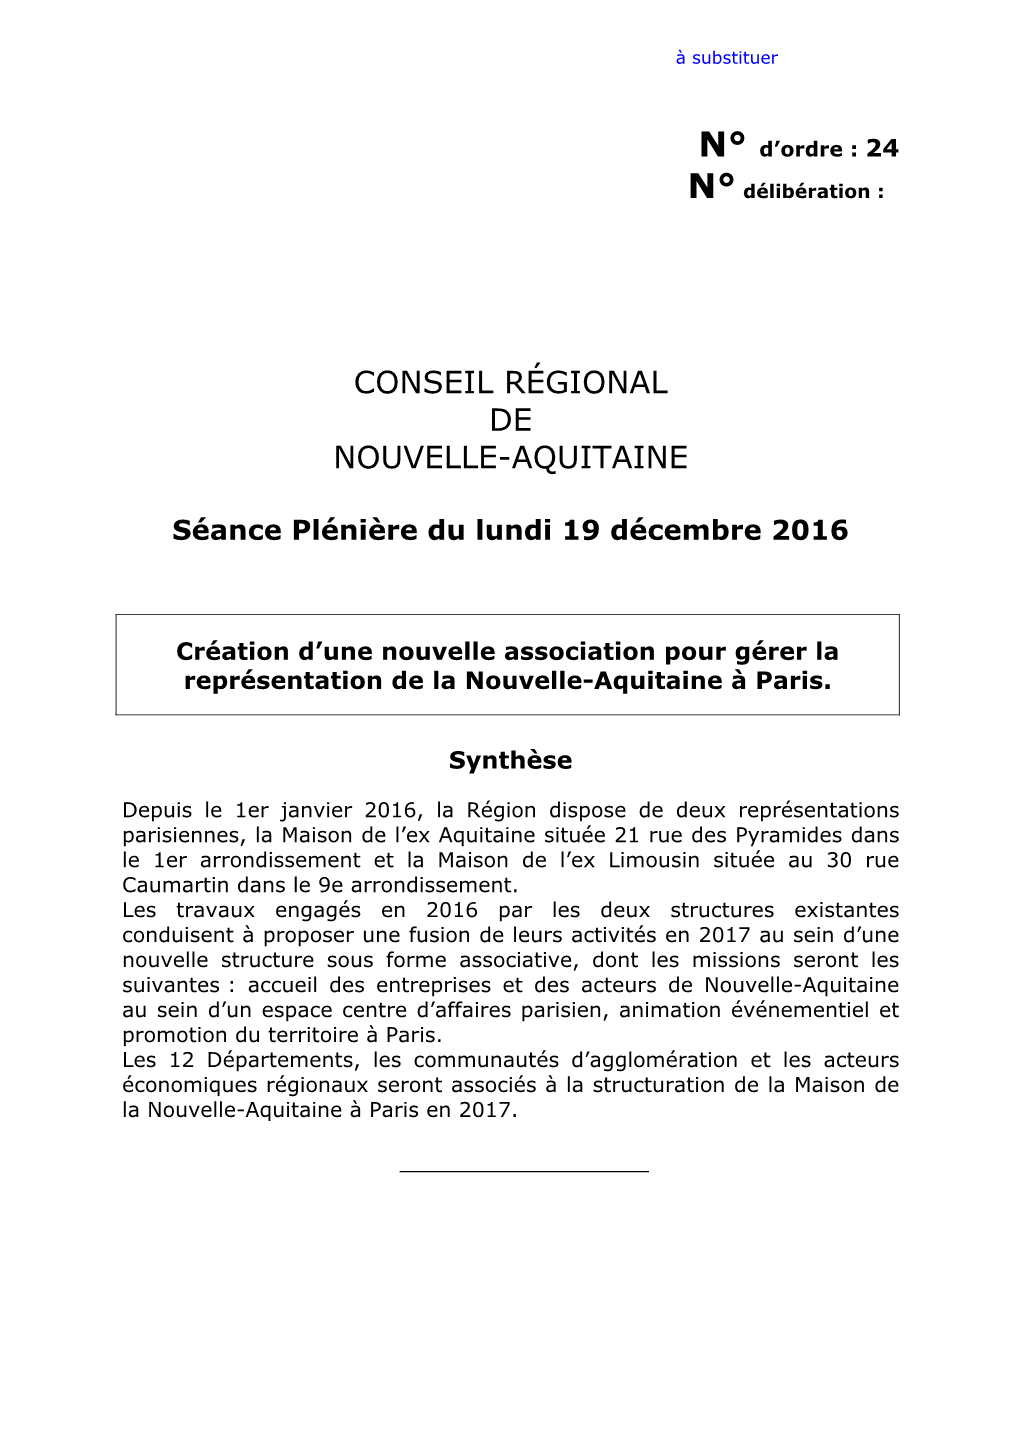 Conseil Régional De Nouvelle-Aquitaine